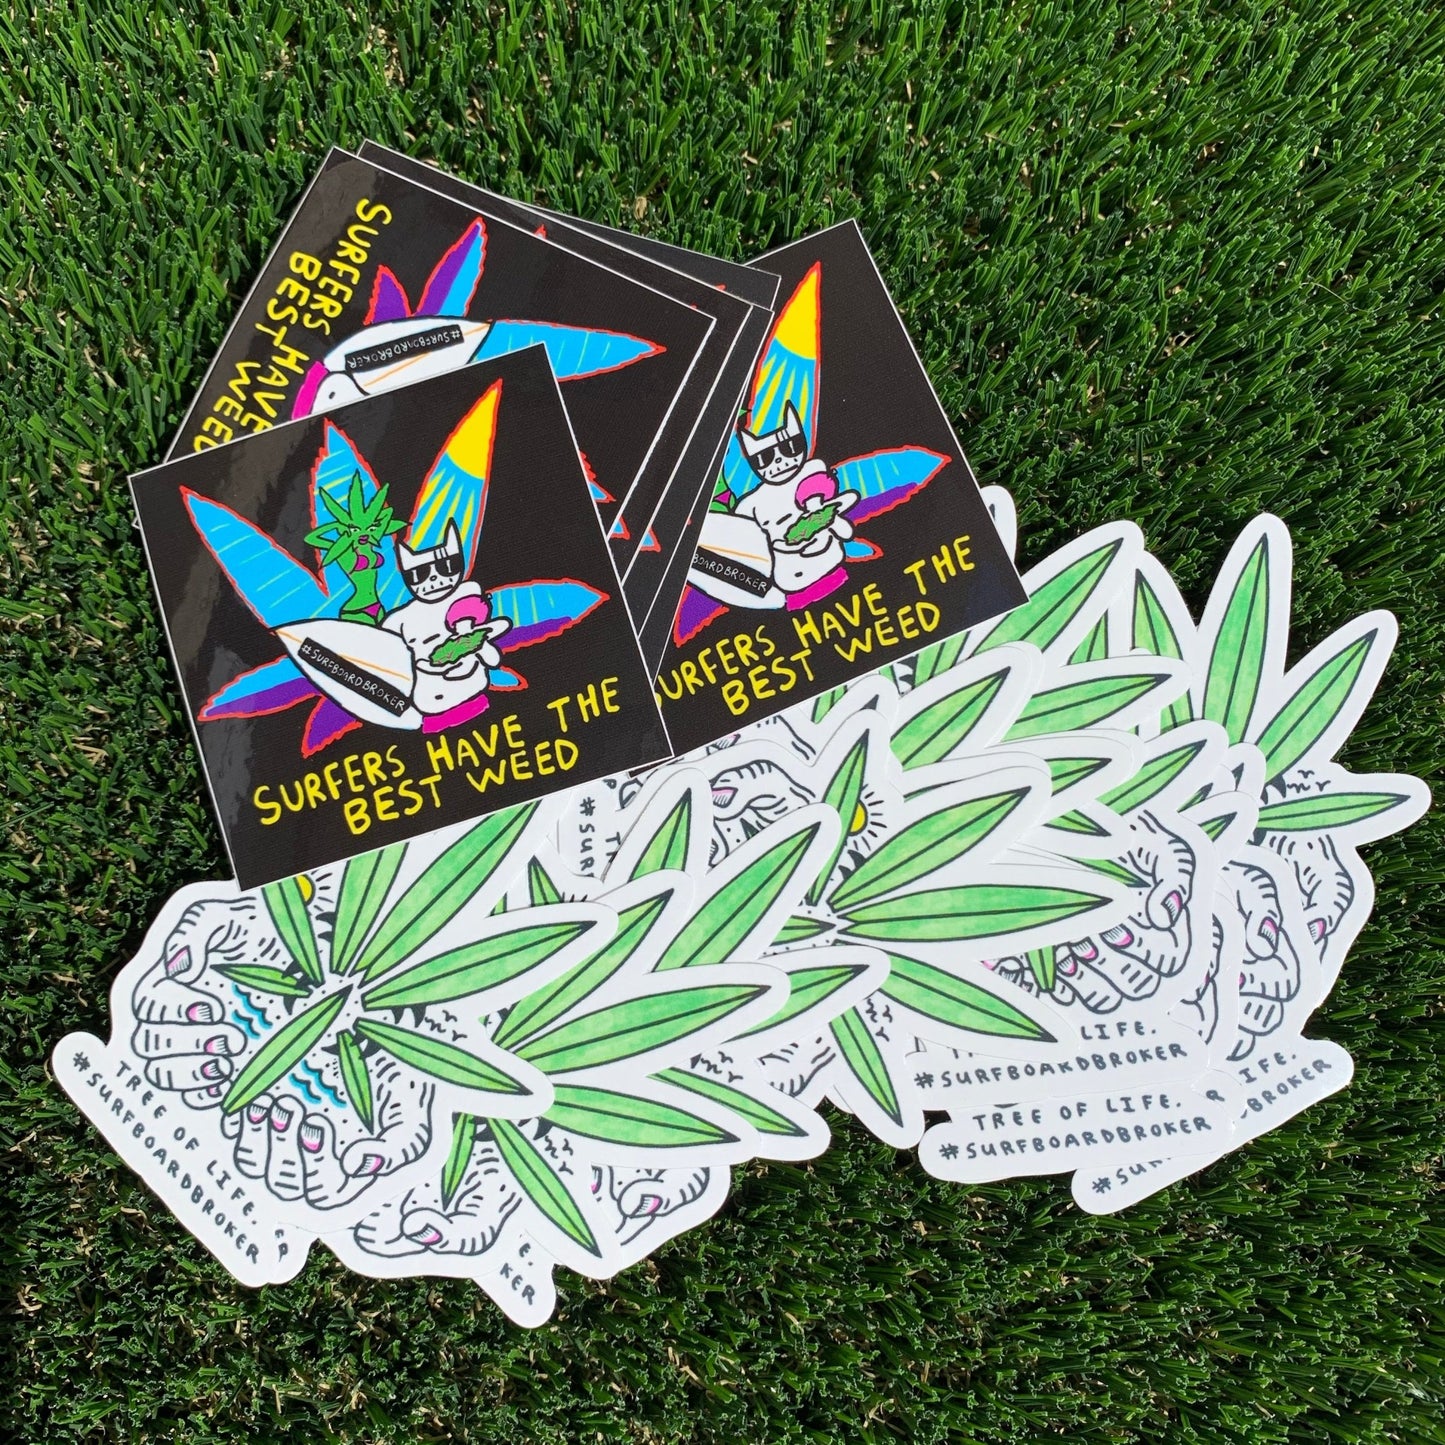 Drew Toonz “Surfers Have The Best Weed” / SpaceBatKiller “Tree Of Life Sticker (4Pack) - Surfboardbroker